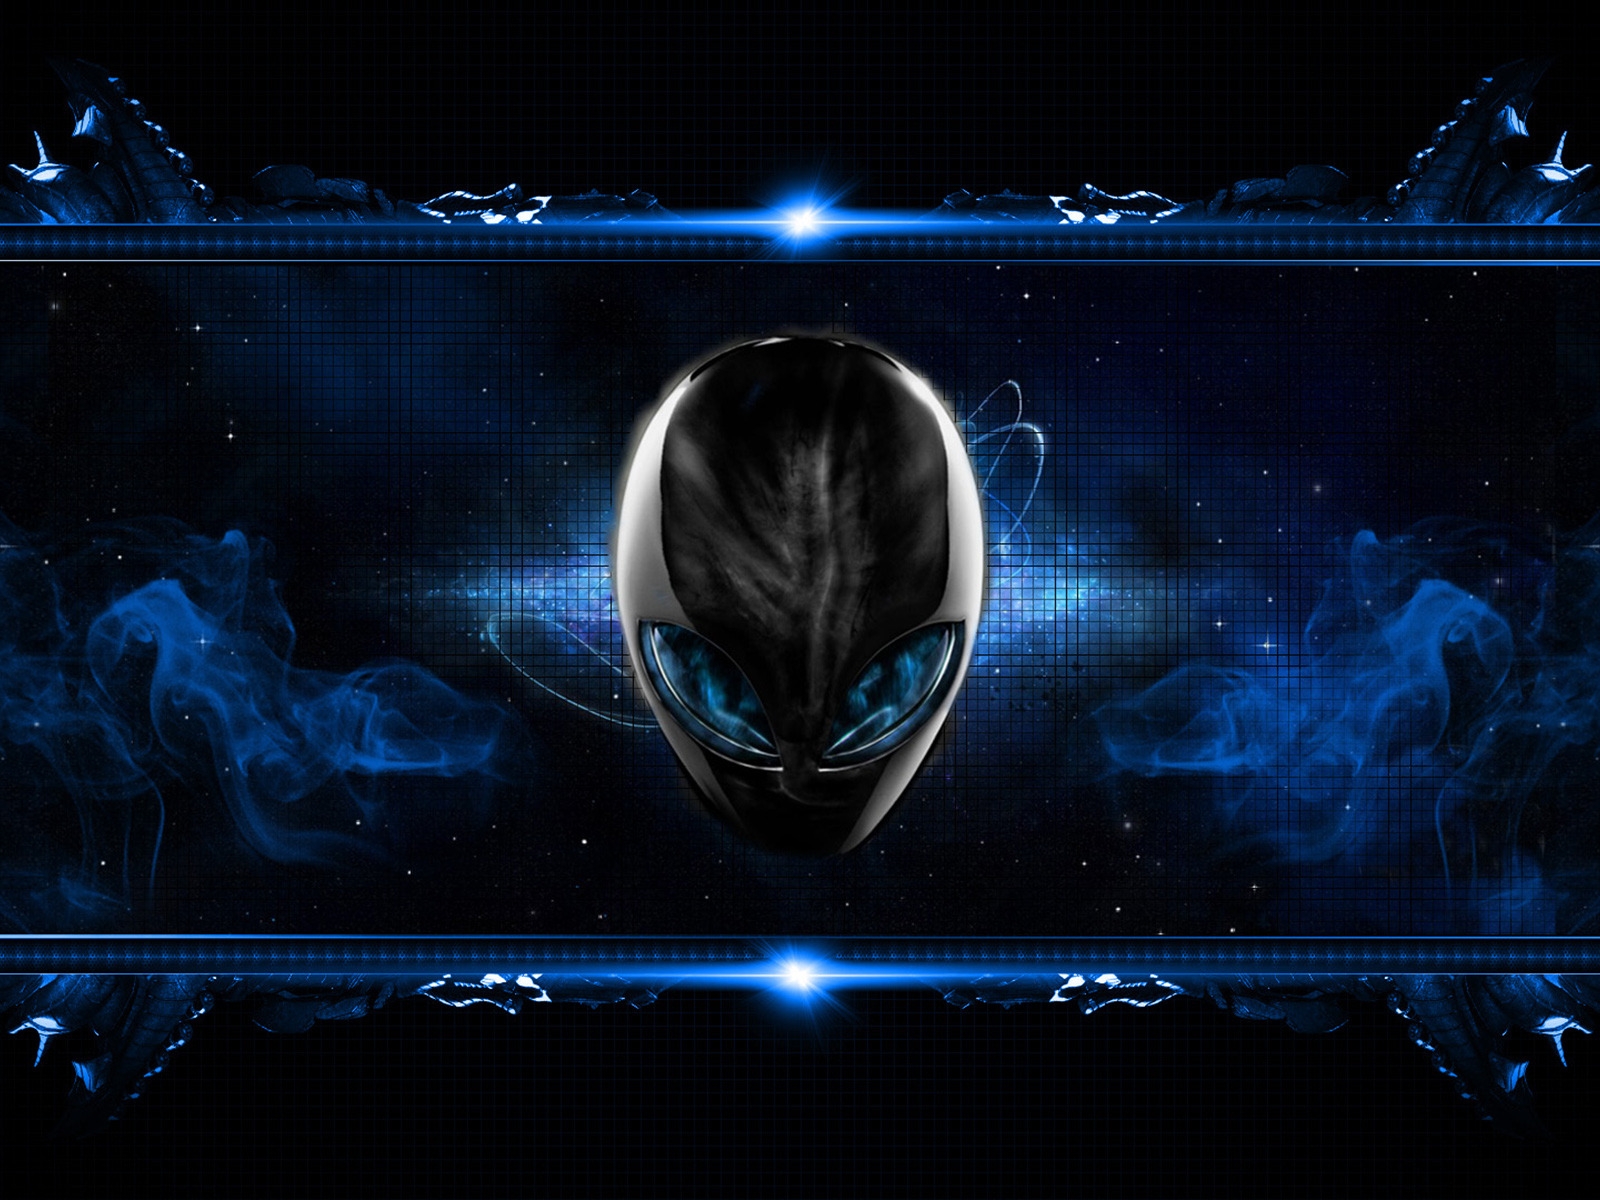 Blue Alien for 1600 x 1200 resolution